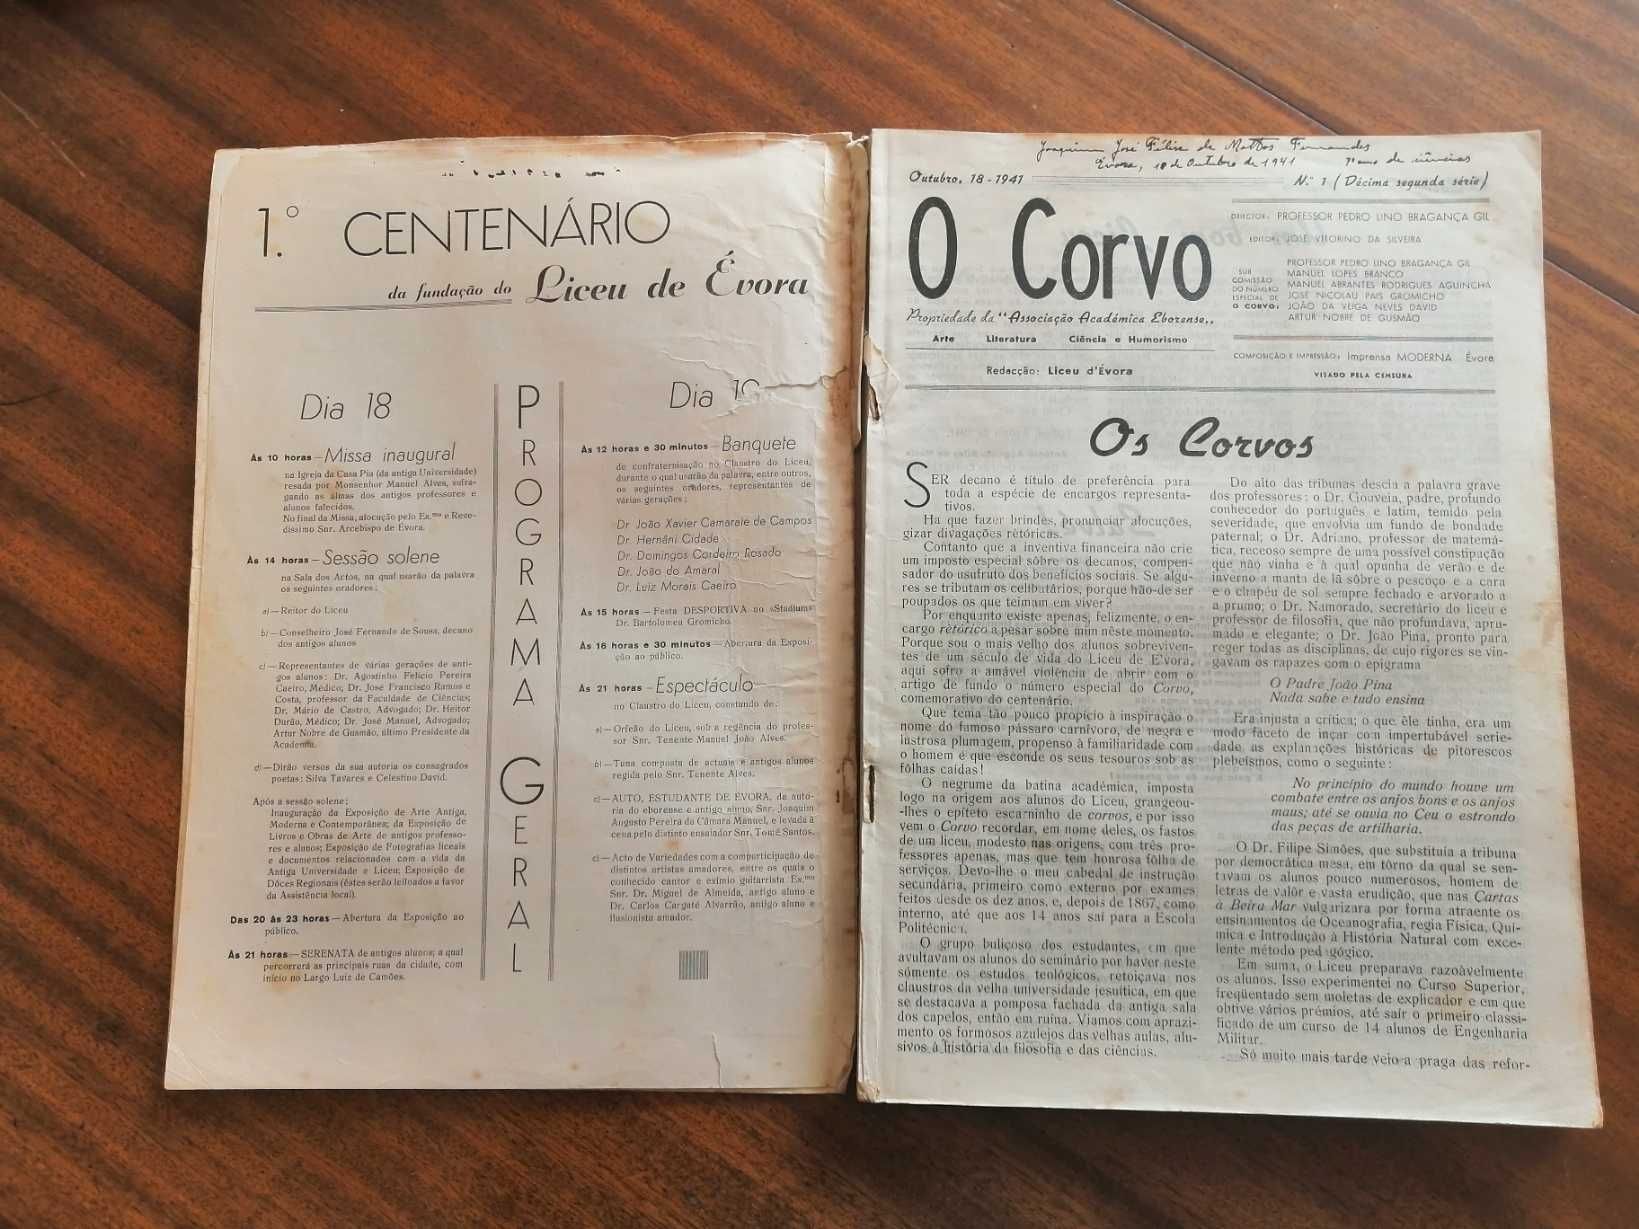 Centenário Liceu Évora 1941 O Corvo c/ Livros séc. XVI impressos Évora